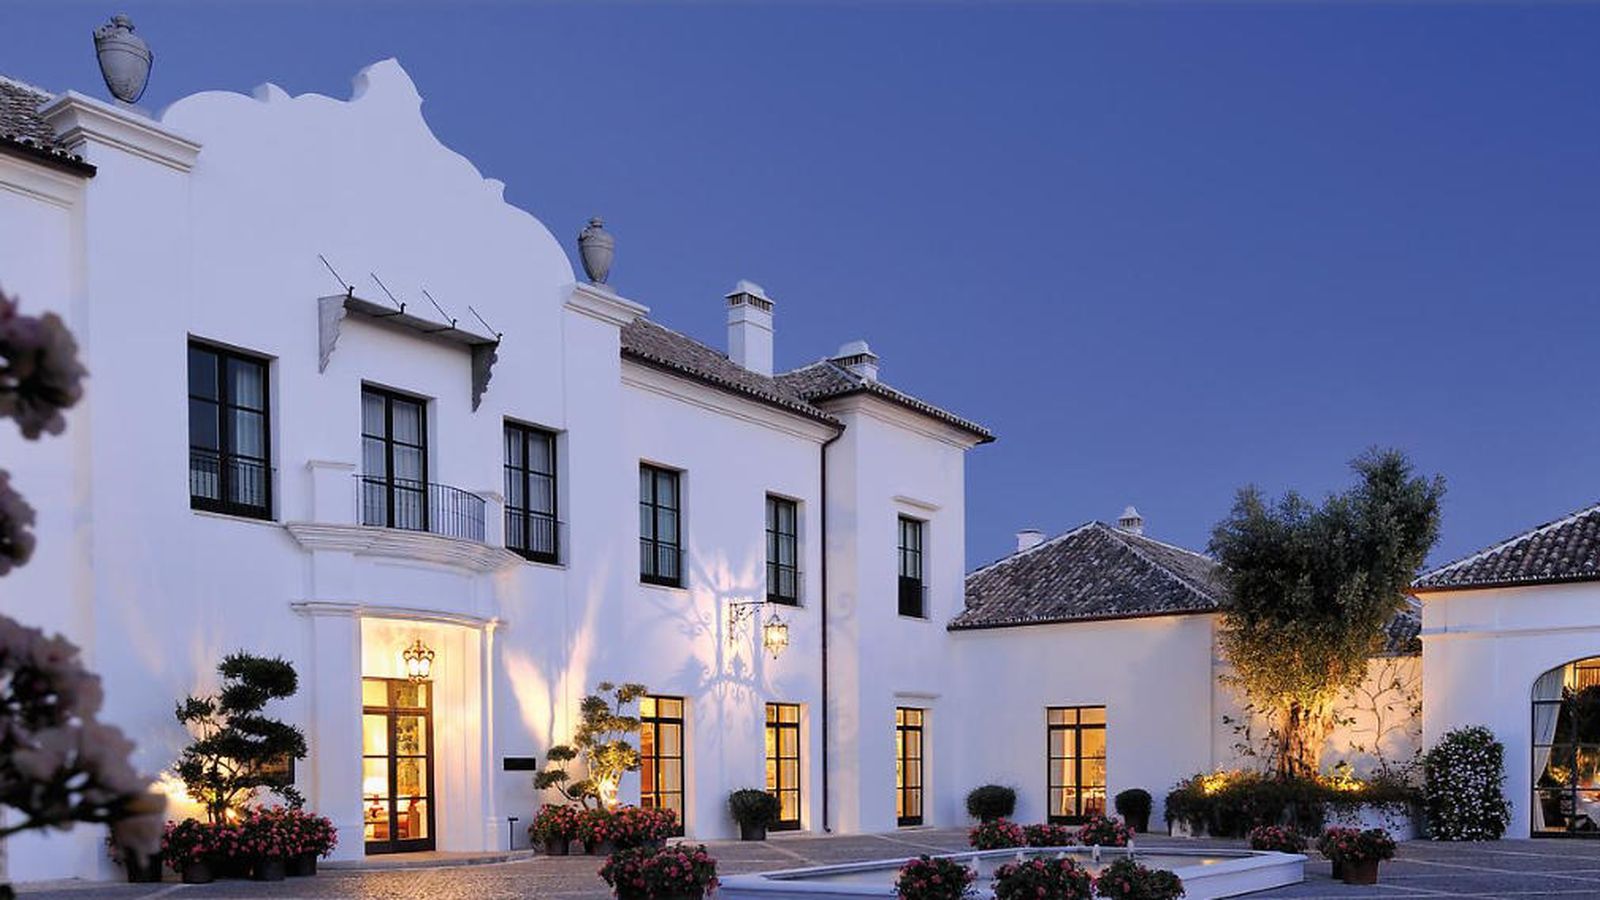 Foto: La inmobiliaria Single Home posee en Málaga uno de los complejos hoteleros más exclusivos de España –Finca Cortesin Hotel Golf & SPA (Single Home)